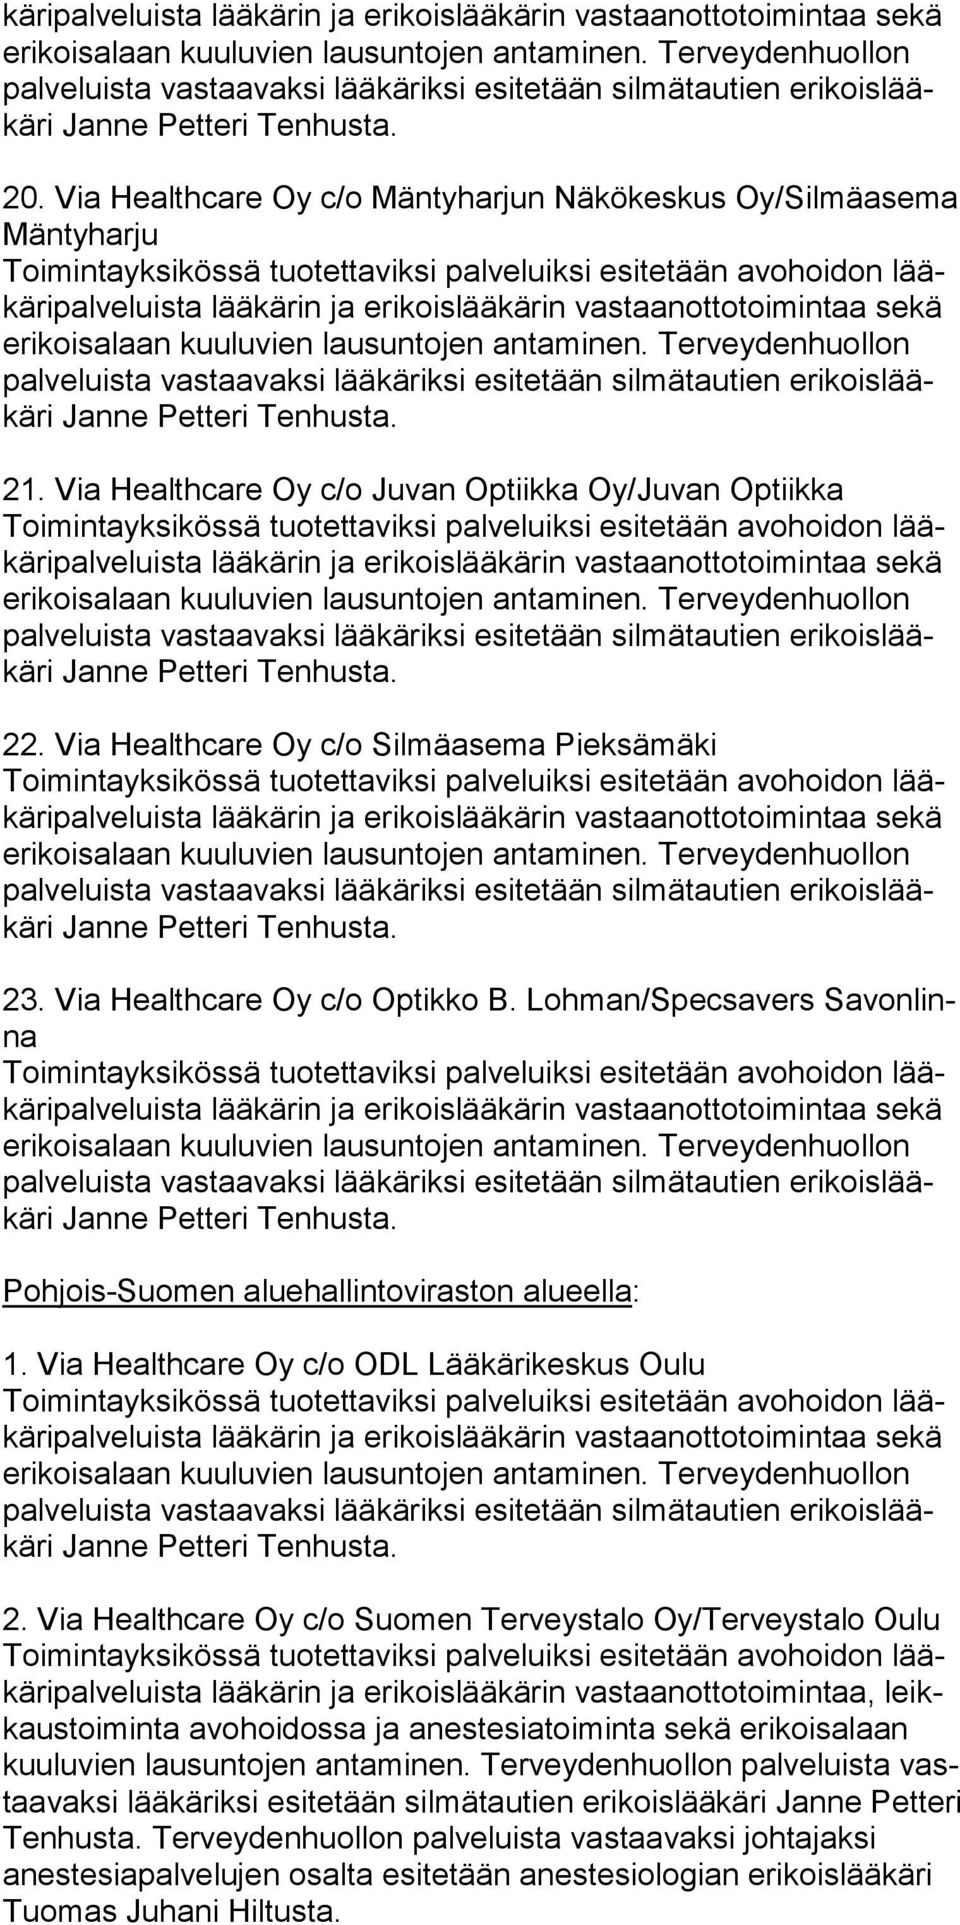 Via Healthcare Oy c/o Suomen Terveystalo Oy/Terveystalo Oulu ripalveluista lää kärin ja erikoislääkärin vastaanottotoimintaa, leikkaustoiminta avo hoidossa ja anestesiatoiminta se kä eri koisalaan